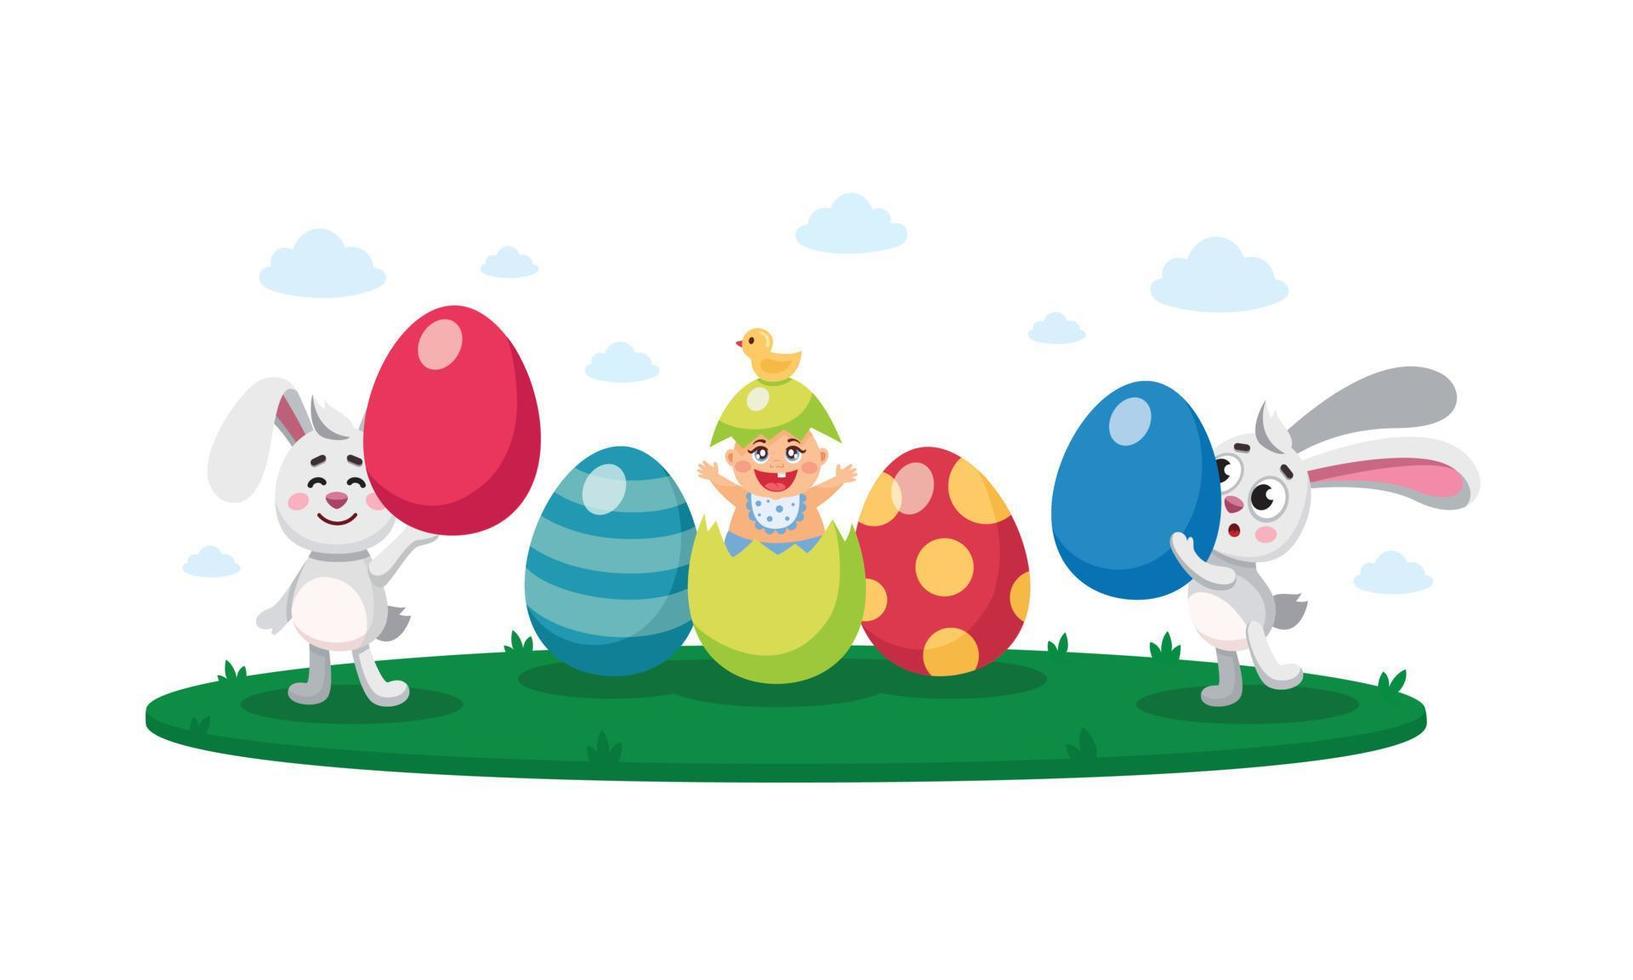 Pascua feliz, caza de huevos, ilustración vectorial plana para niños, composición, pancarta, tarjeta, afiche con huevos pintados y decorativos, bebé recién nacido, conejos de Pascua, conejitos, liebres, saludo de temporada vector